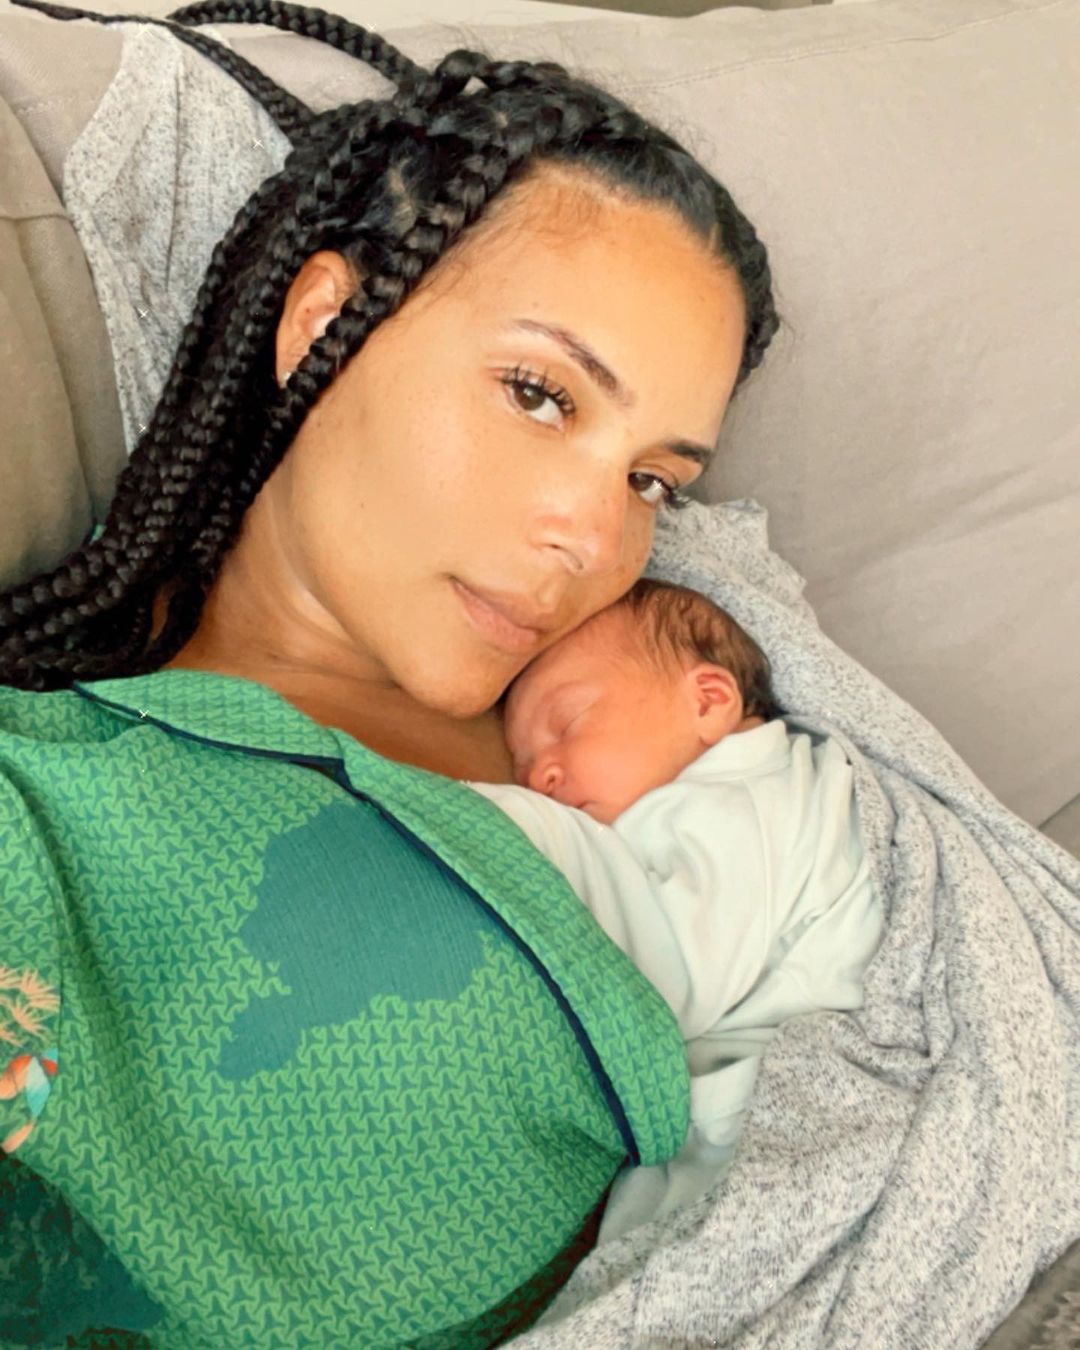 ludacris new baby mama